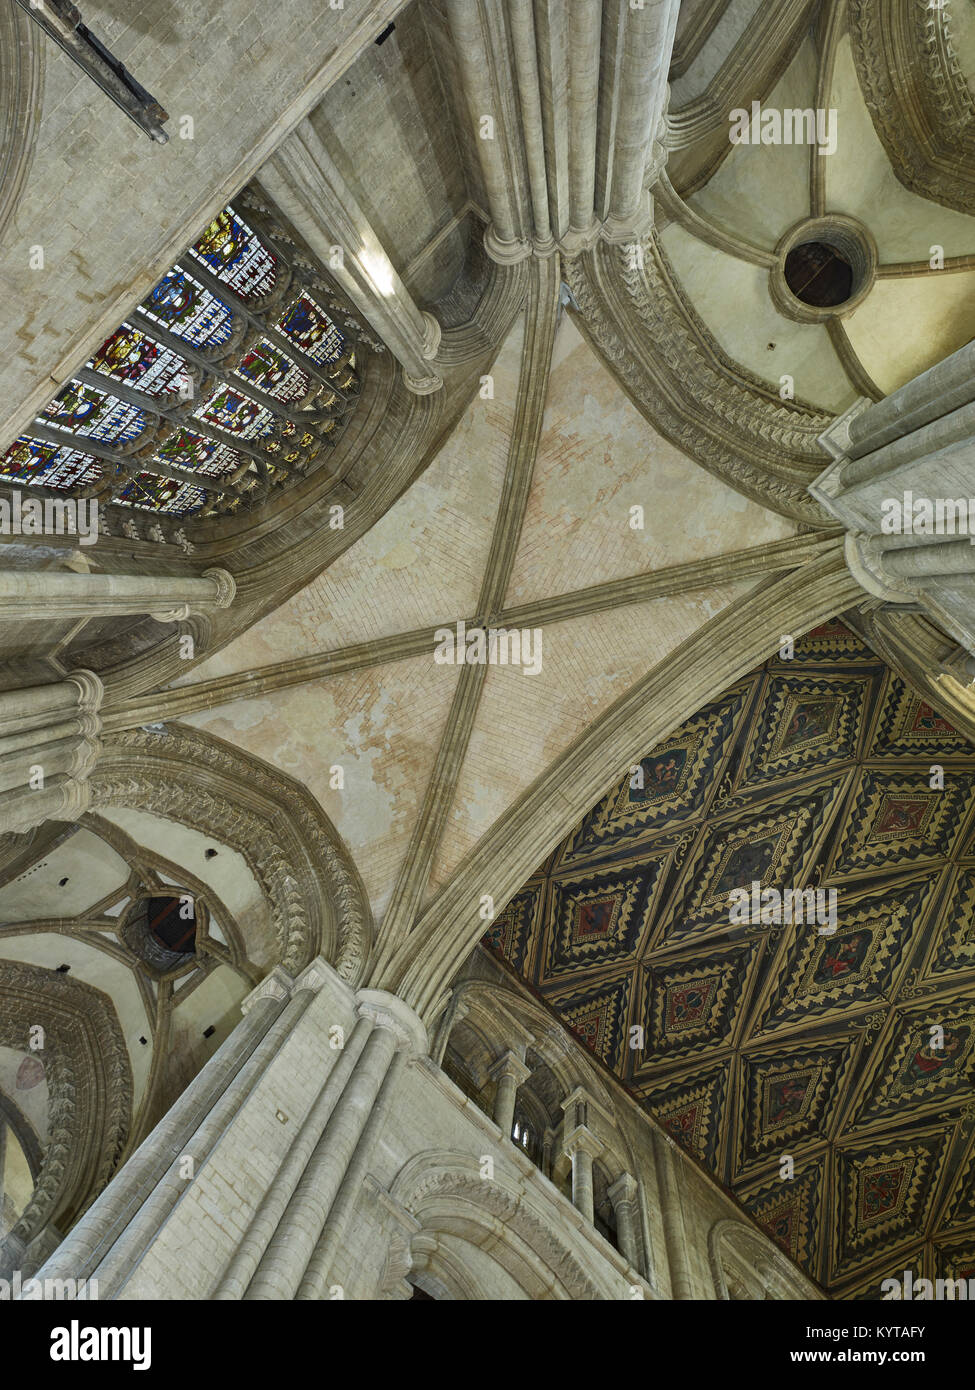 Die Kathedrale von Peterborough. Aussicht bis in den Westen Querschiff, am westlichen Ende des Kirchenschiffs, zeigt eine Vielzahl der Gewölbe Muster. Einfach die vierseitige (d Stockfoto